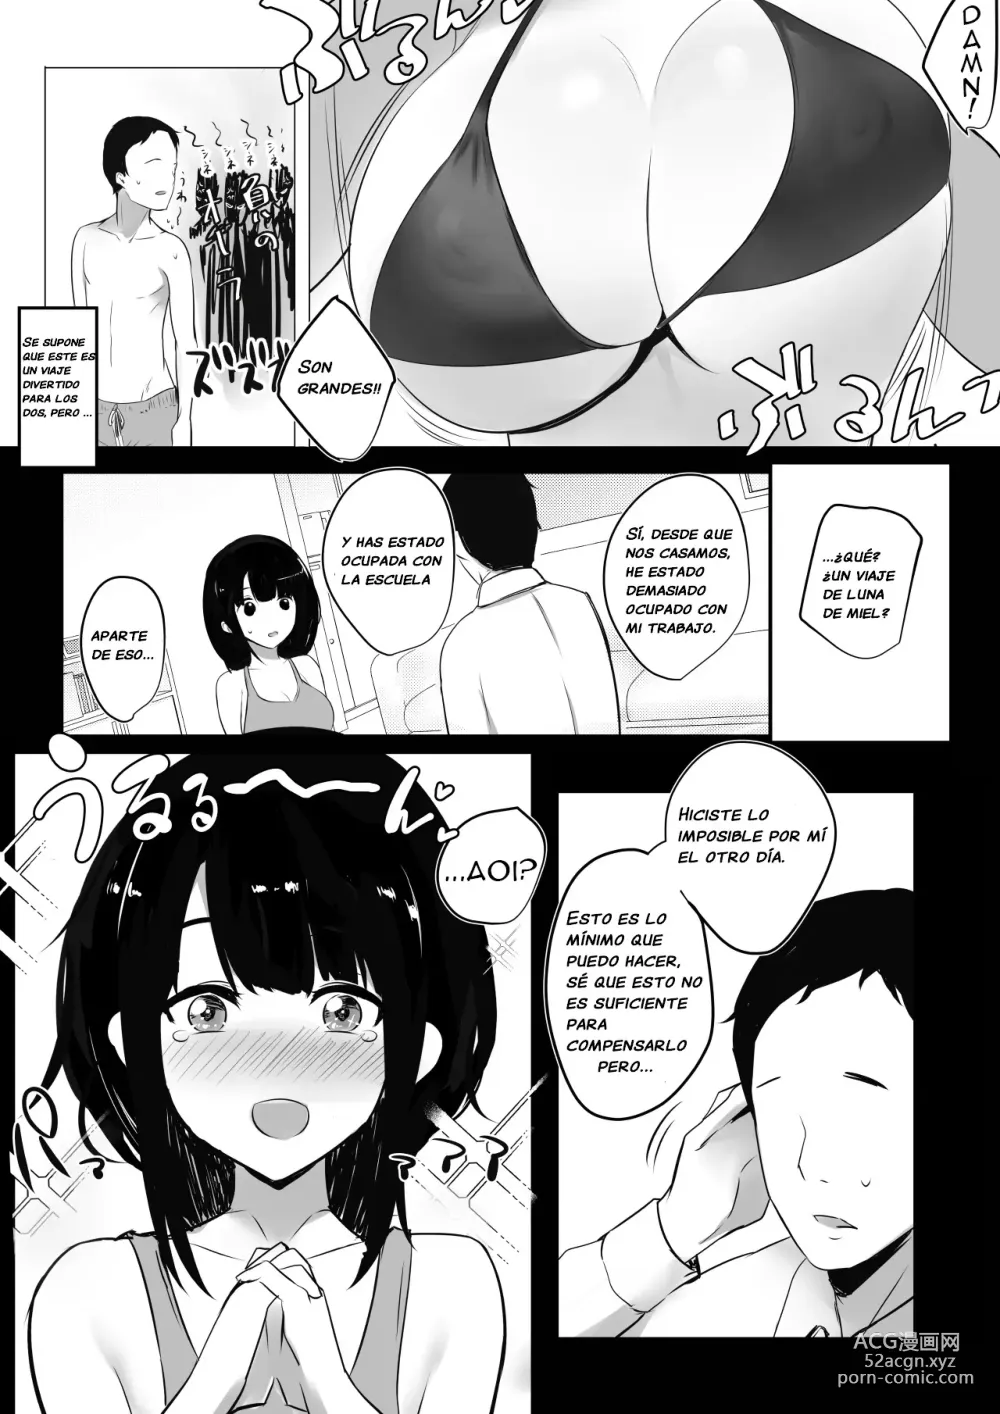 Page 4 of doujinshi Vi a una esposa de preparatoria de grandes pechos que solo deja que otro hombre la mime y abrace 2.